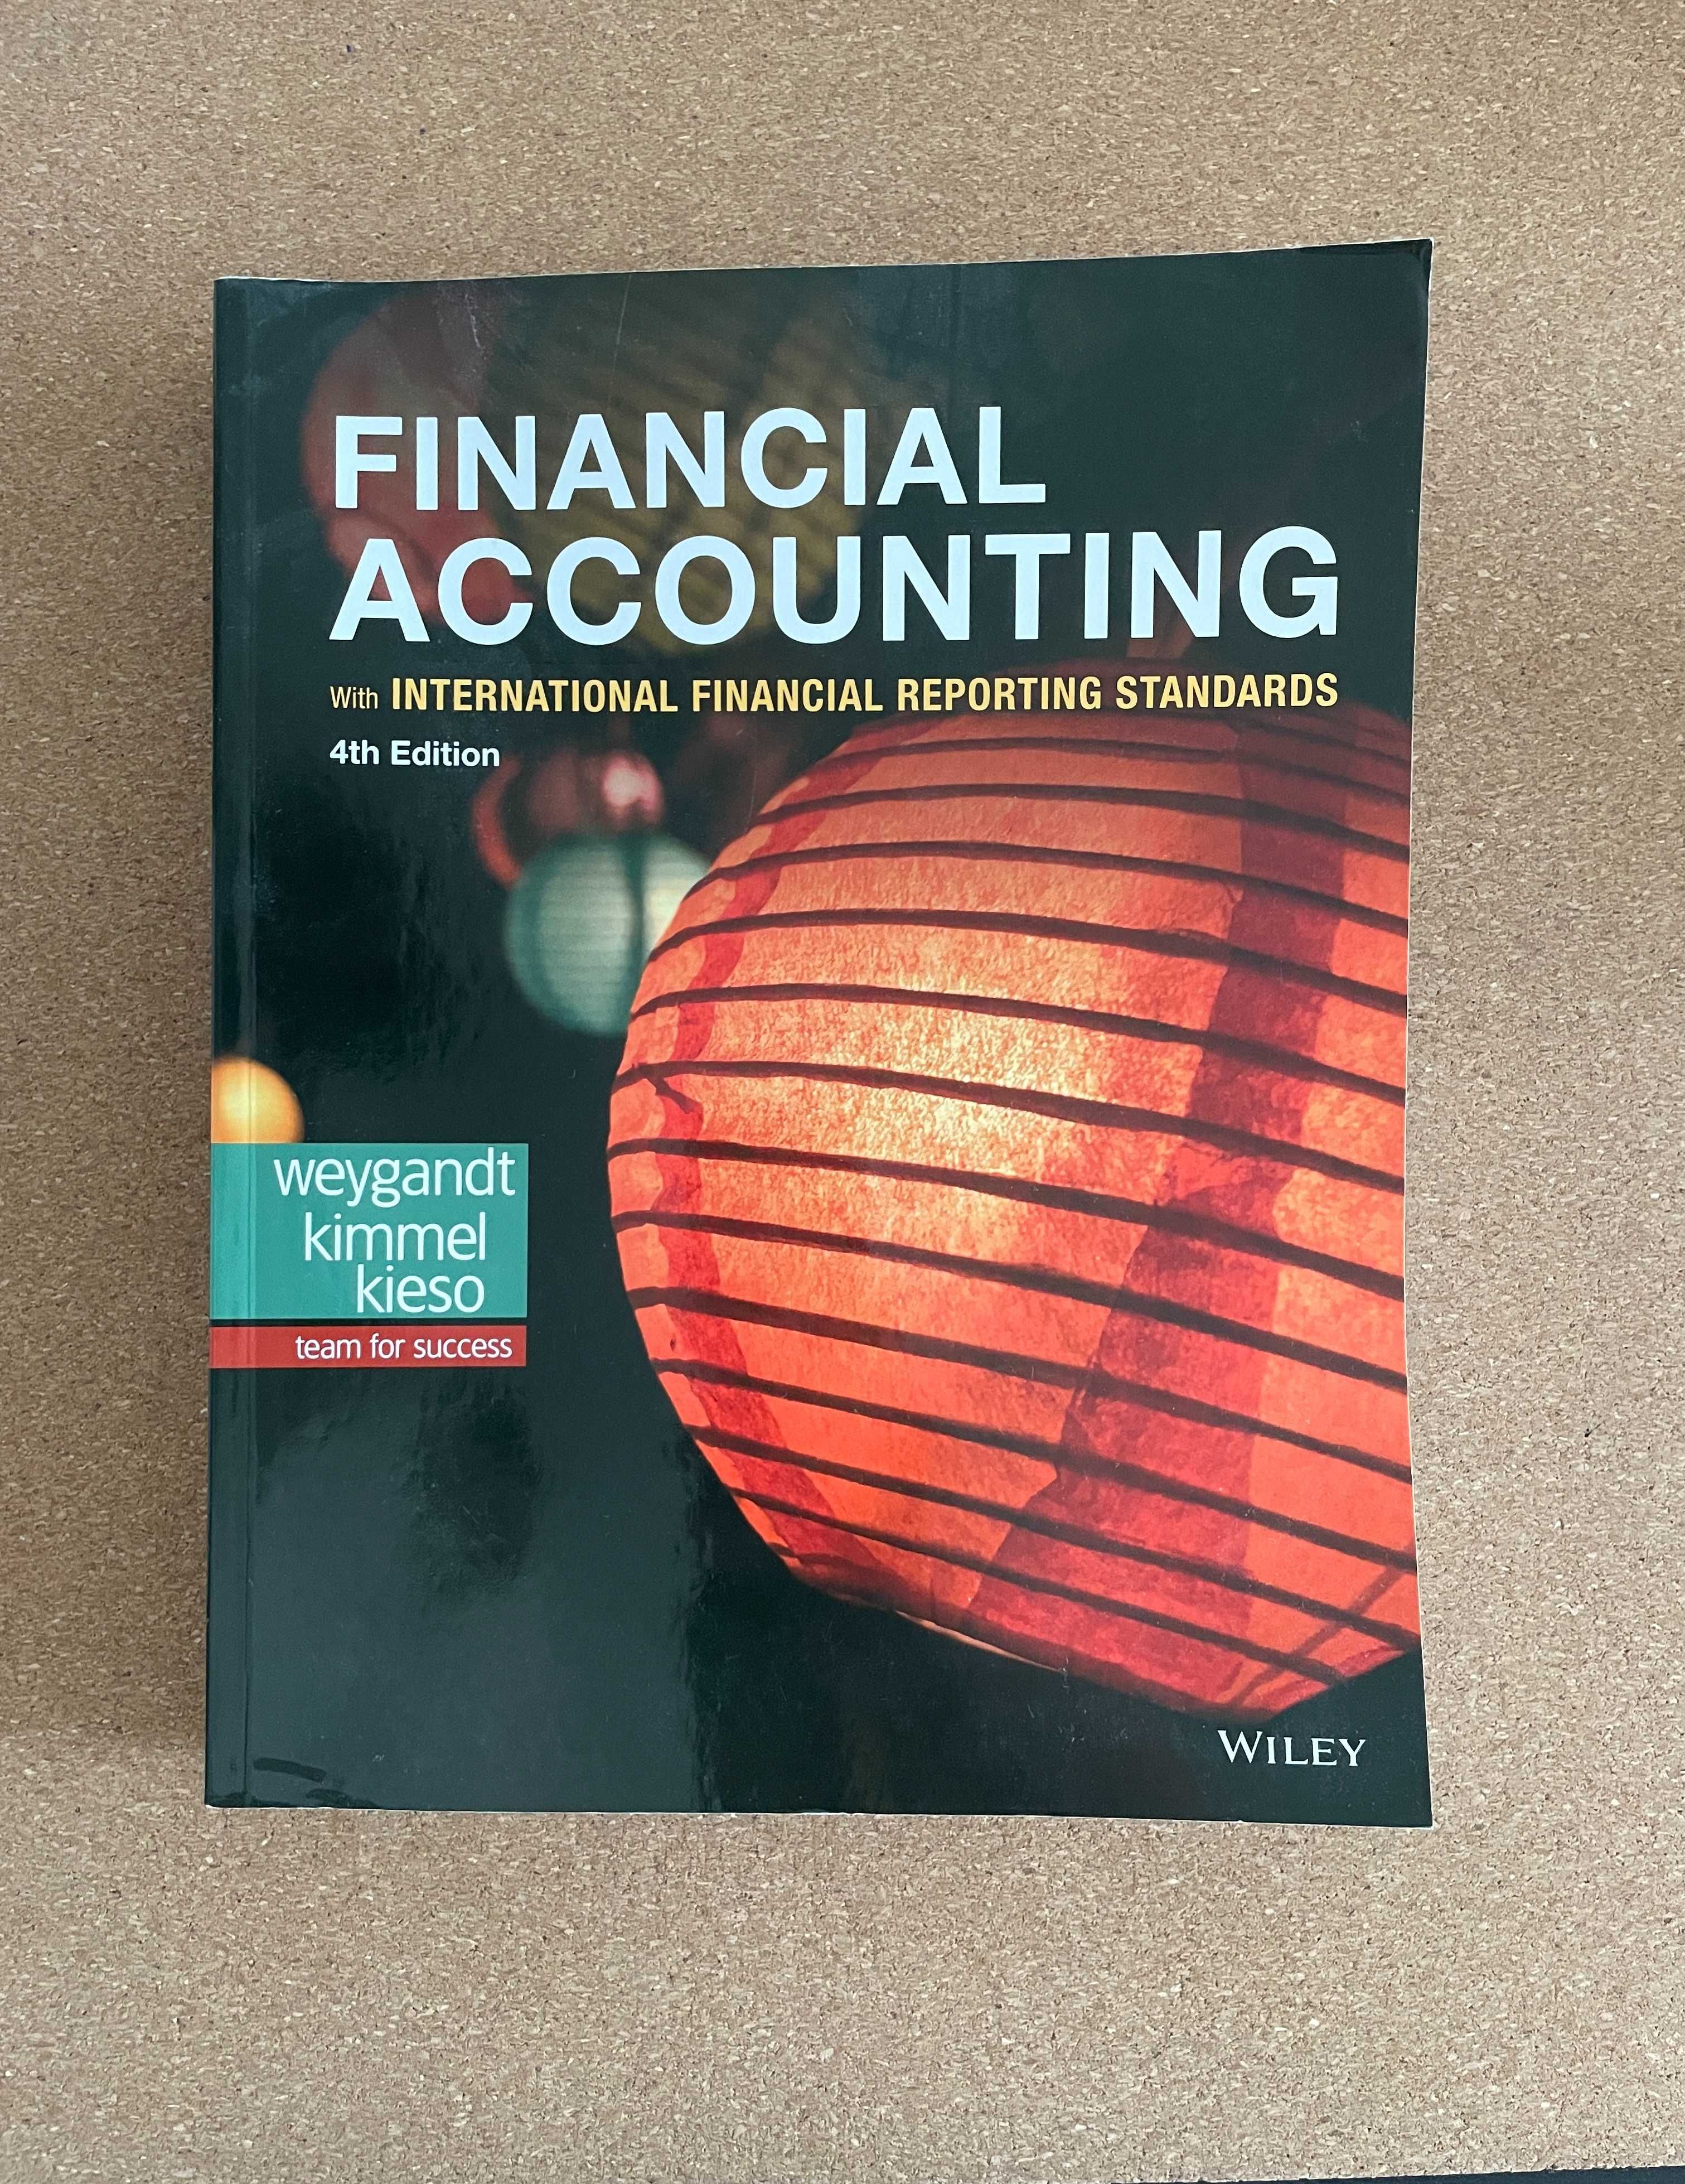 Financial Accounting - Weygandt Kimmel Kieso